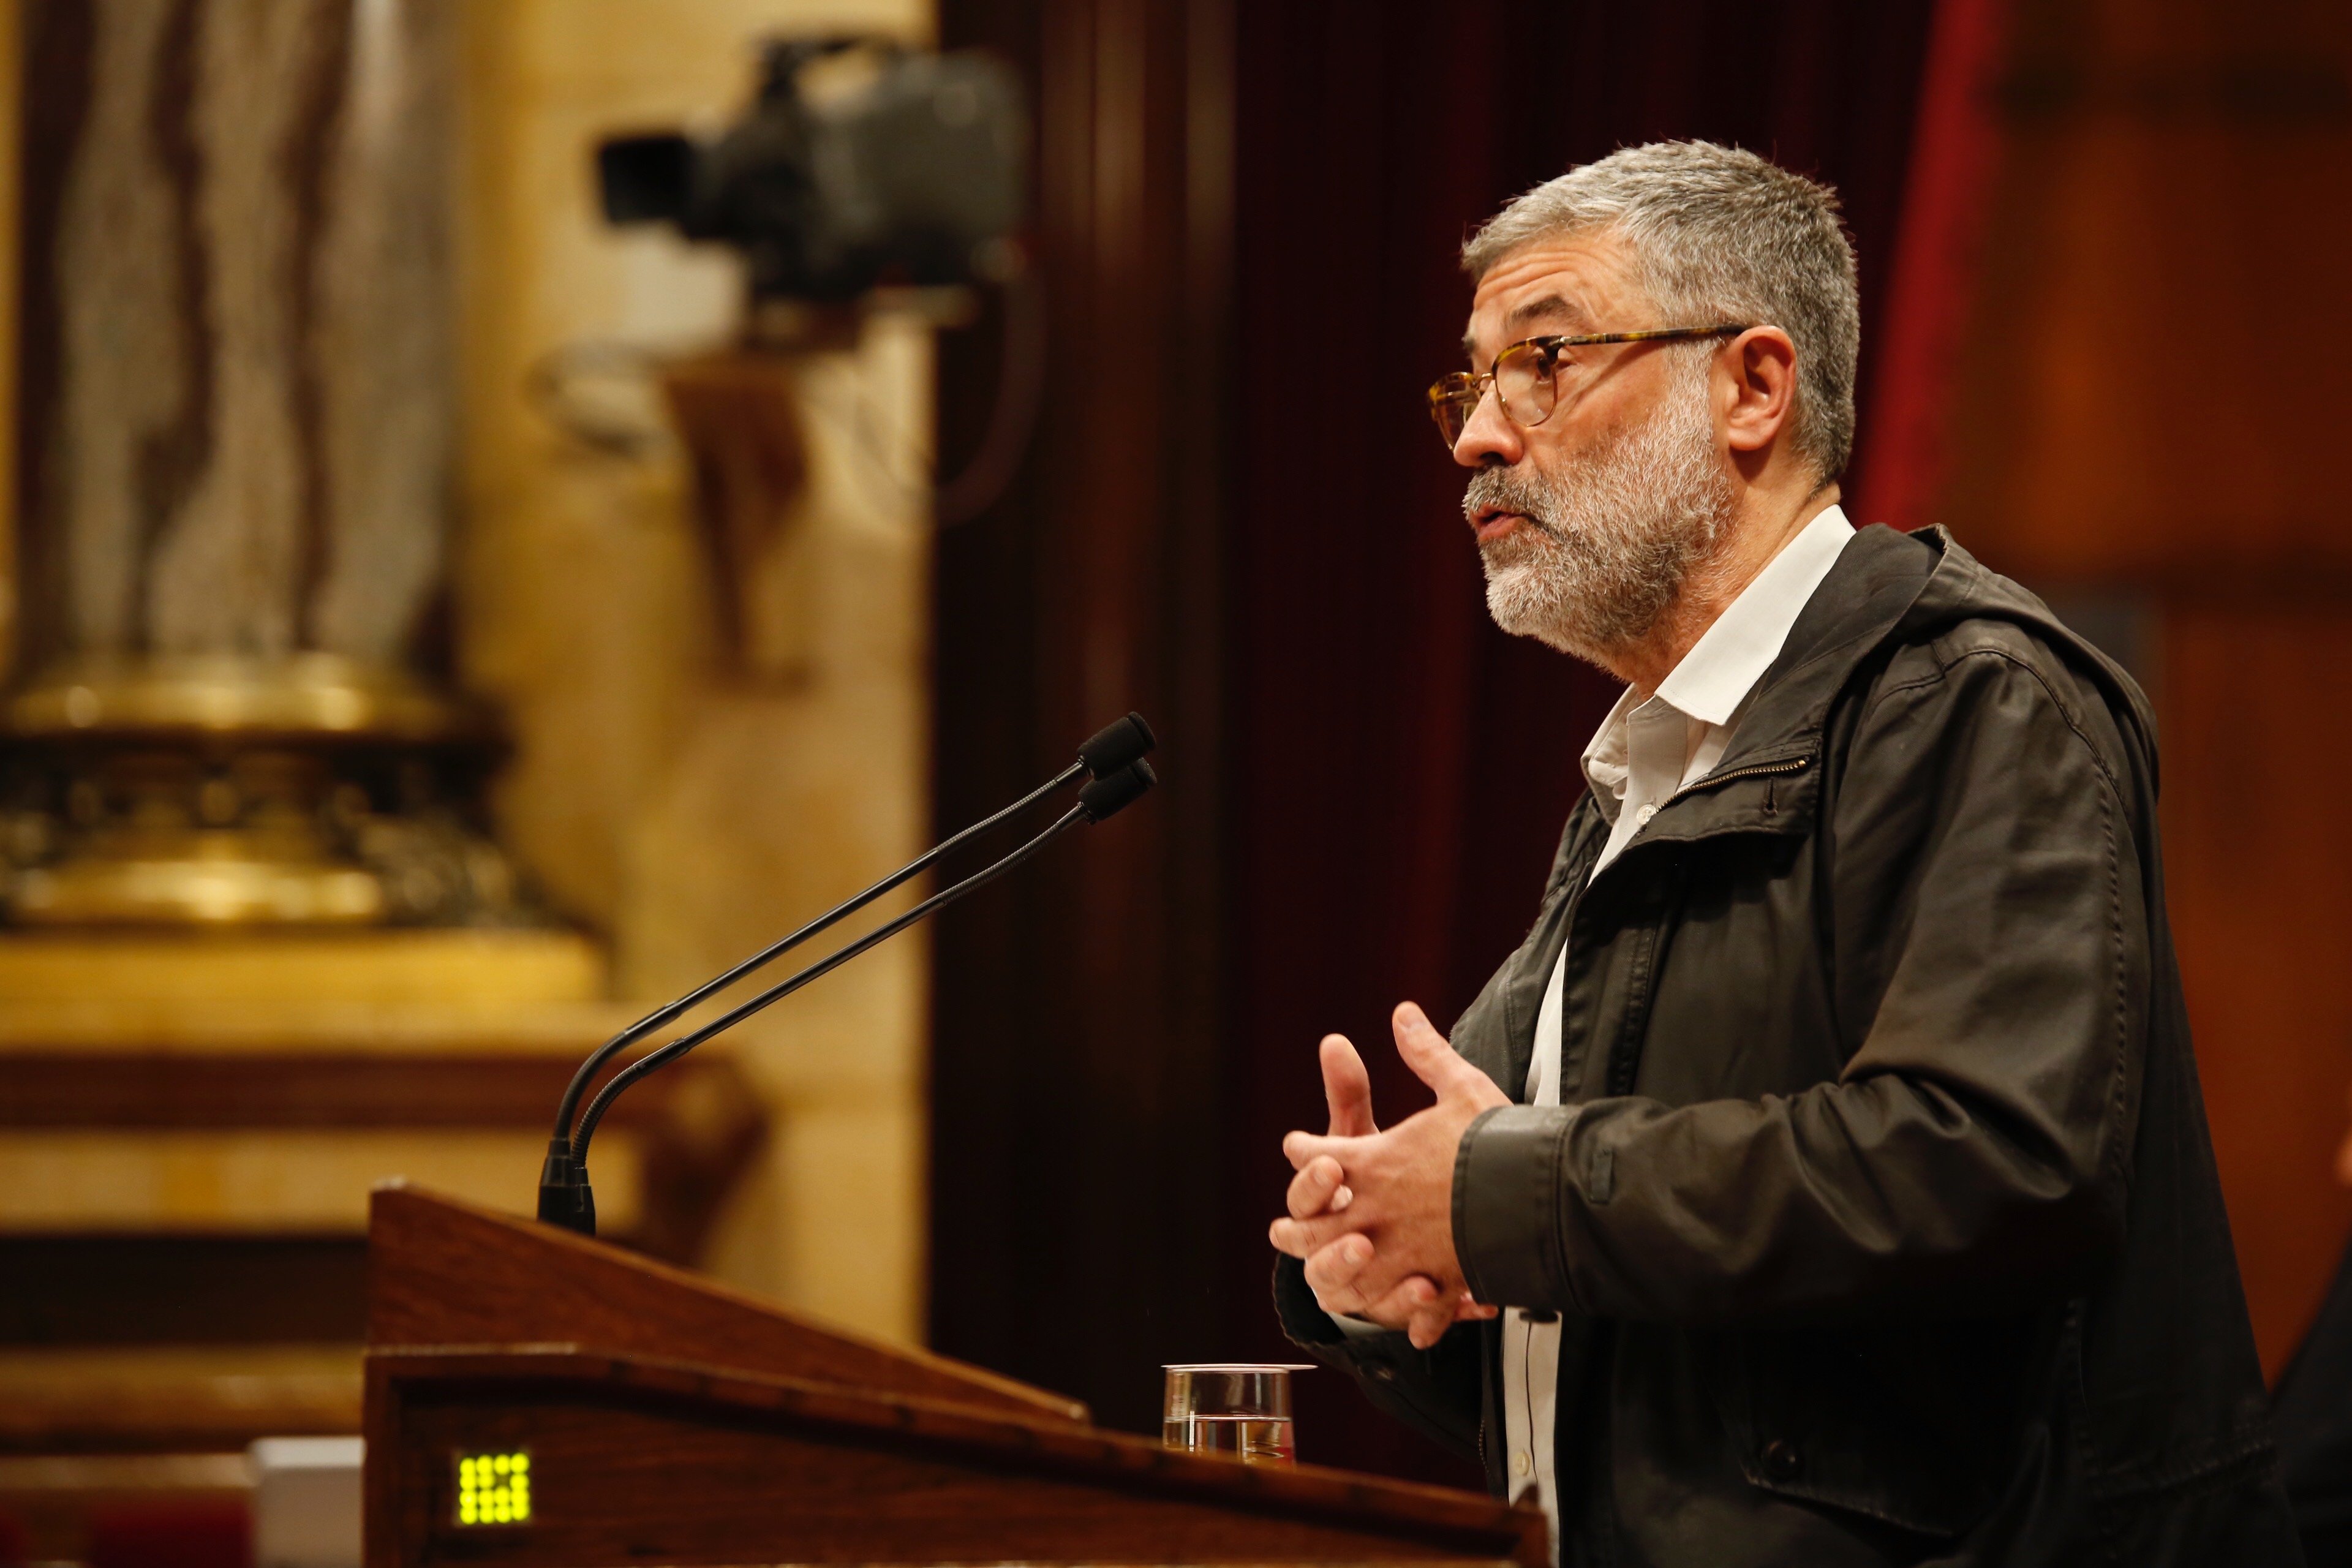 Carles Riera reitera que cal trencar amb l'Estat després del manteniment del 155